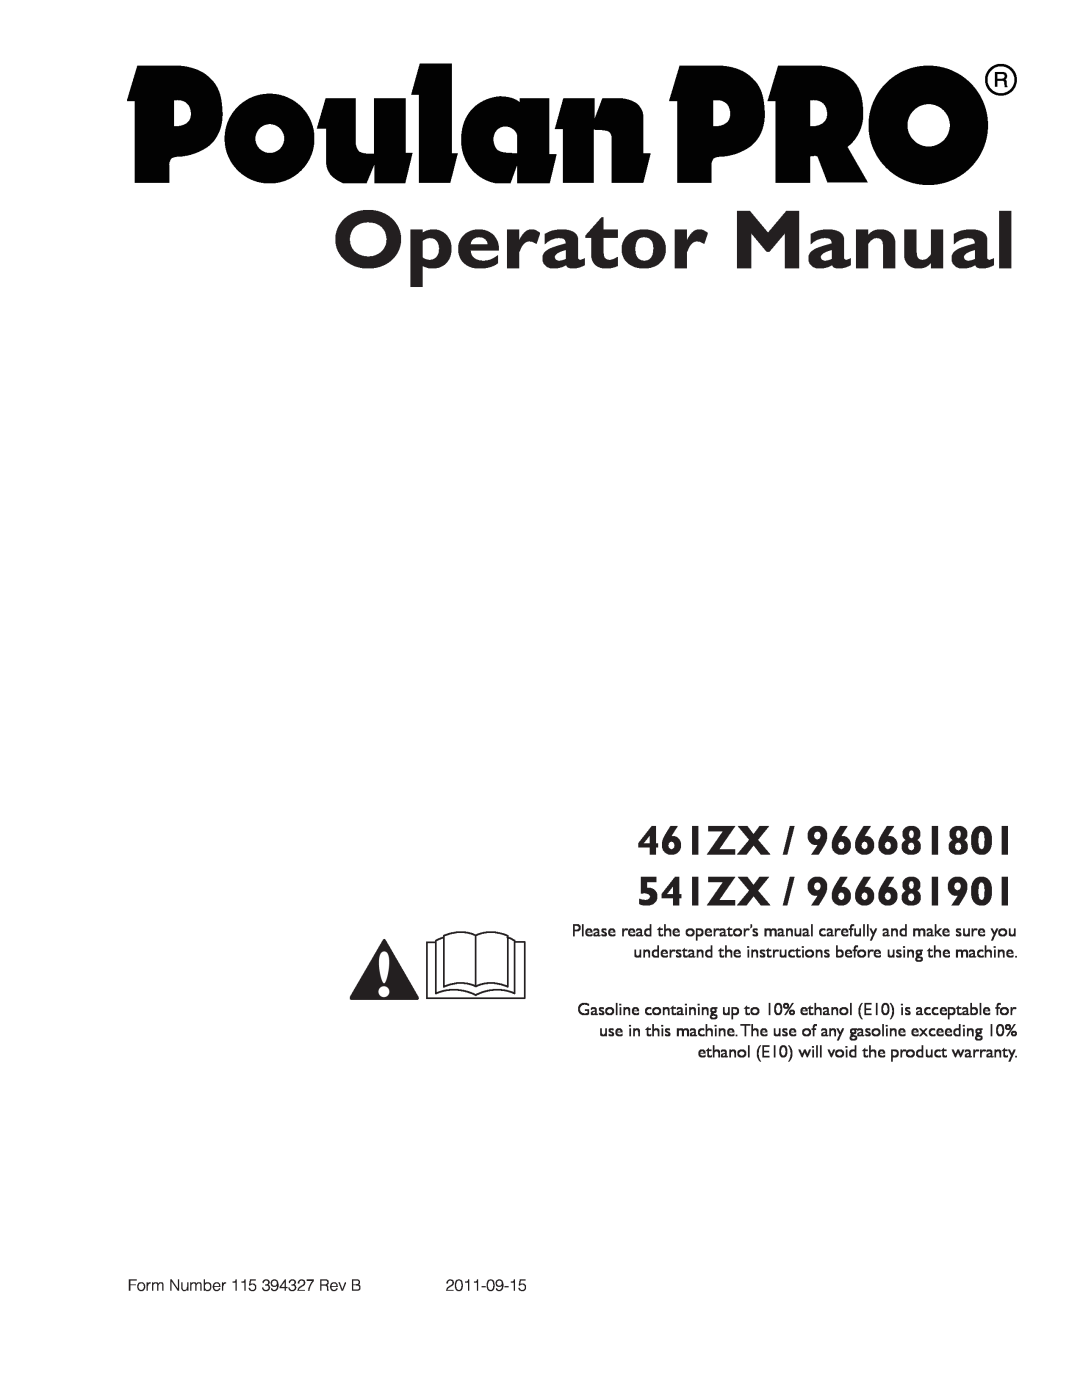 Poulan warranty Parts Manual, 461ZX / 966681801 541ZX 